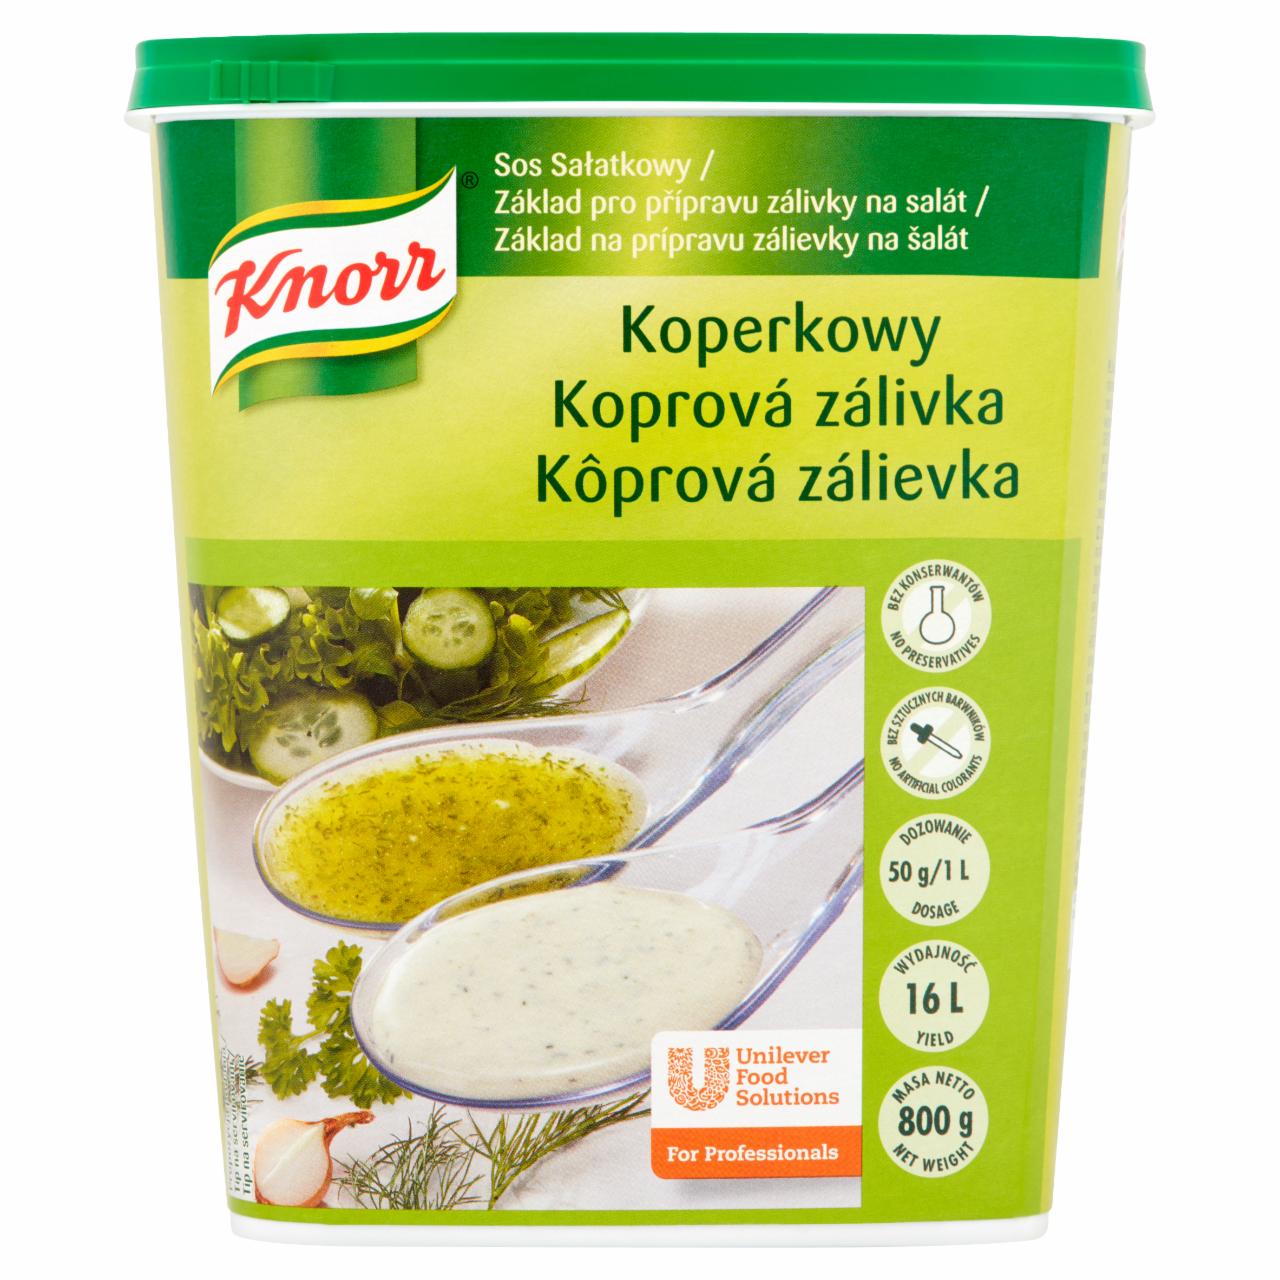 Zdjęcia - Knorr Sos sałatkowy koperkowy 800 g